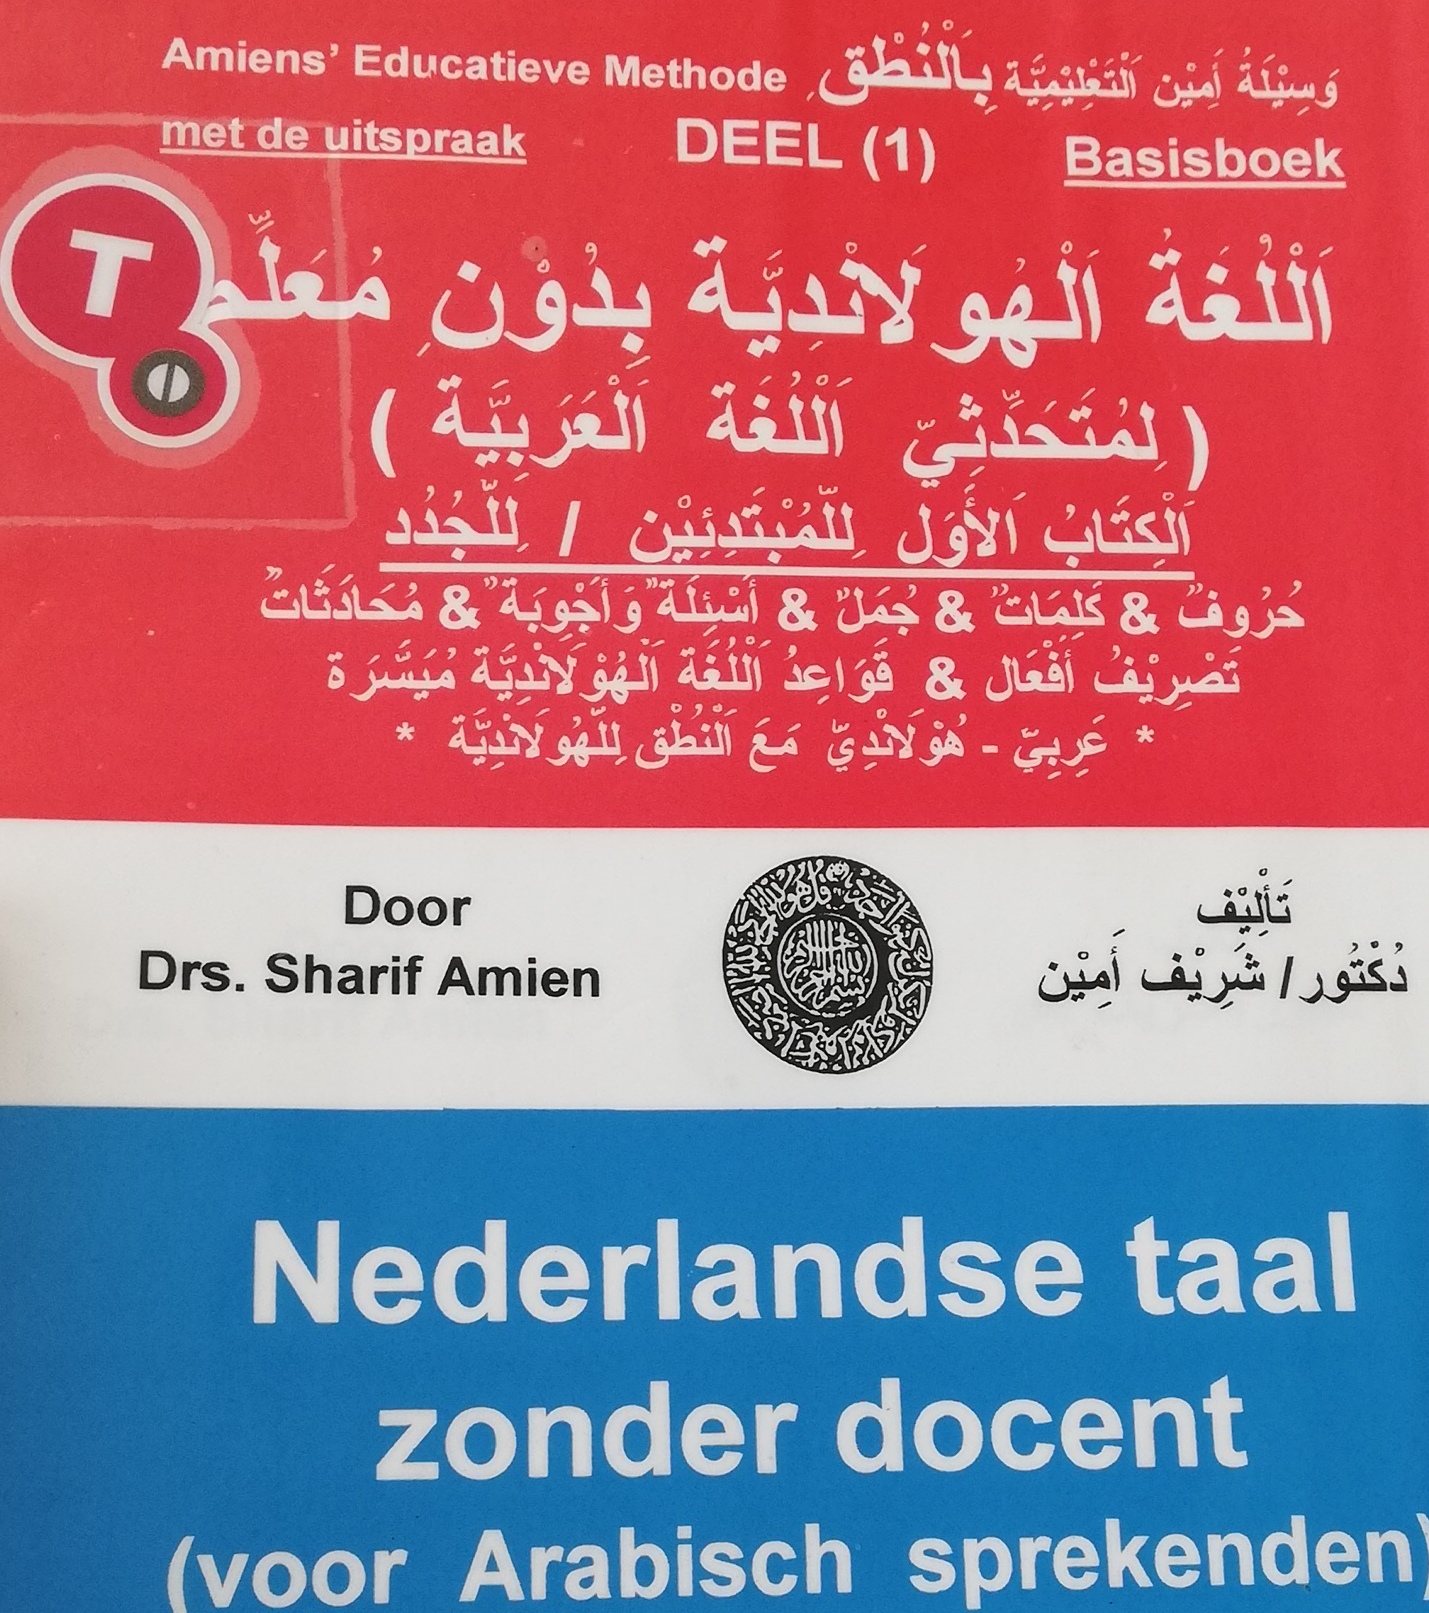 أول خمس صفحات من كتاب تعلم اللغة الهولندية بدون معلم كتير مفيد